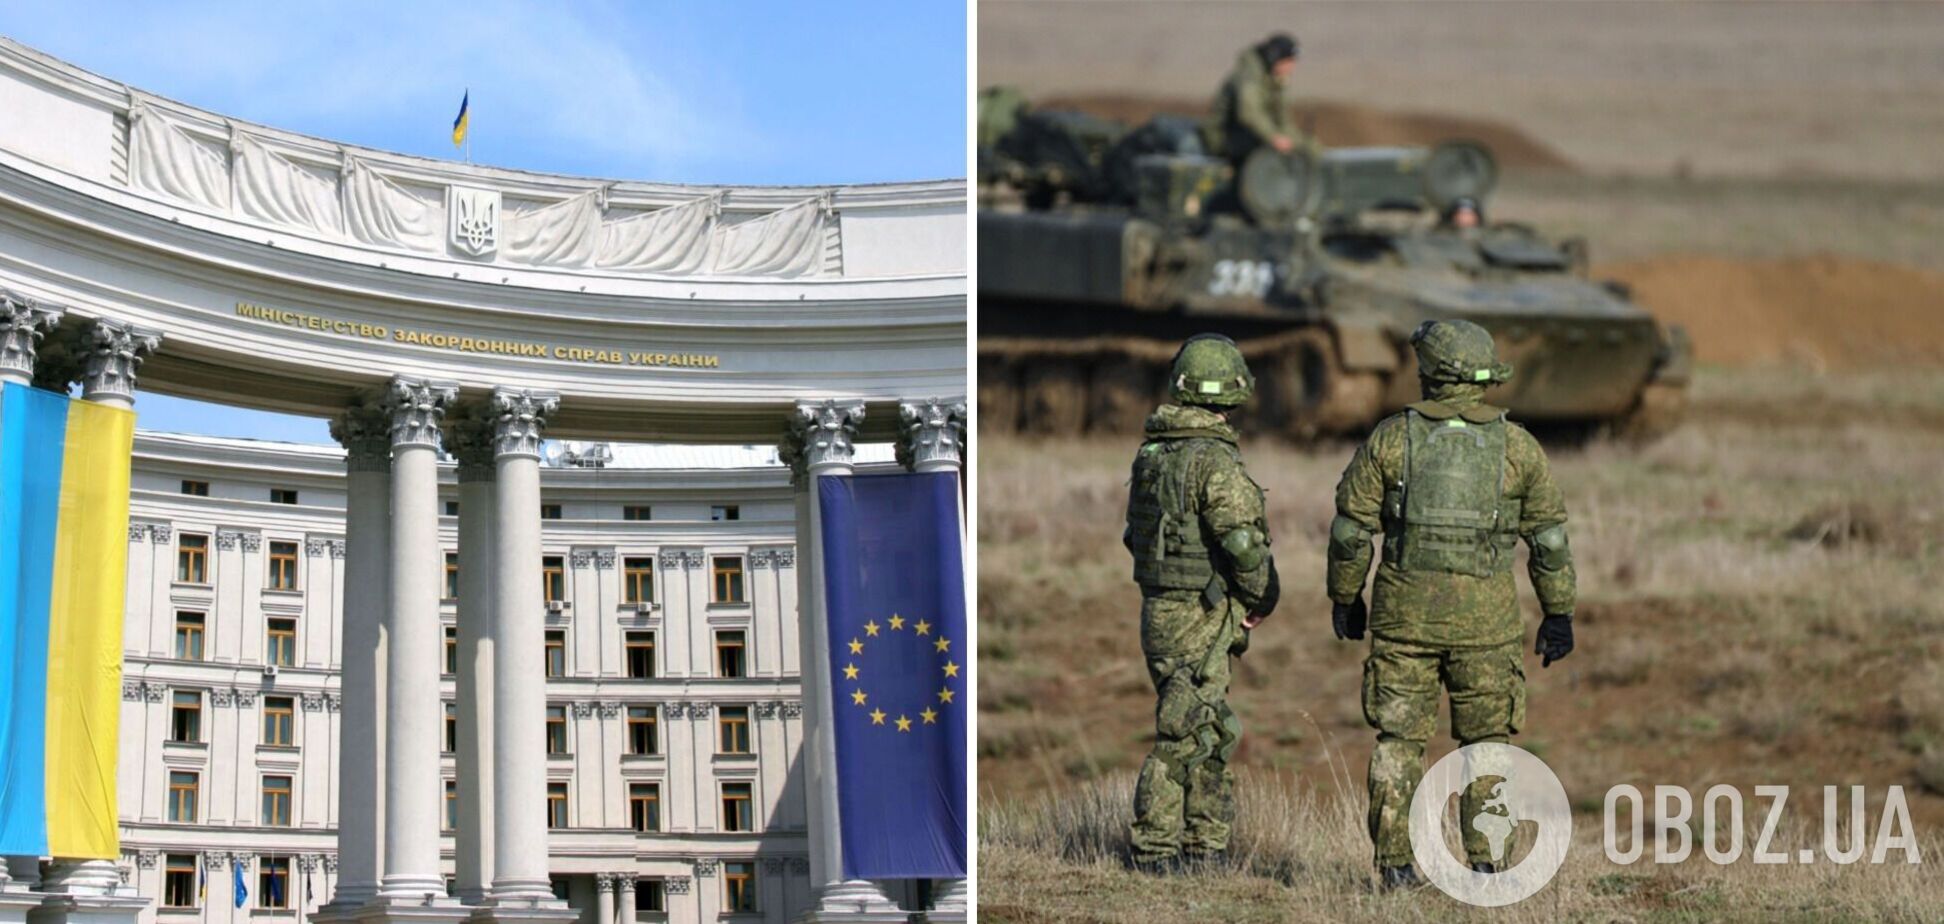 МИД – о решении суда, признавшего присутствие военных РФ на Донбассе: России подписали явку с повинной